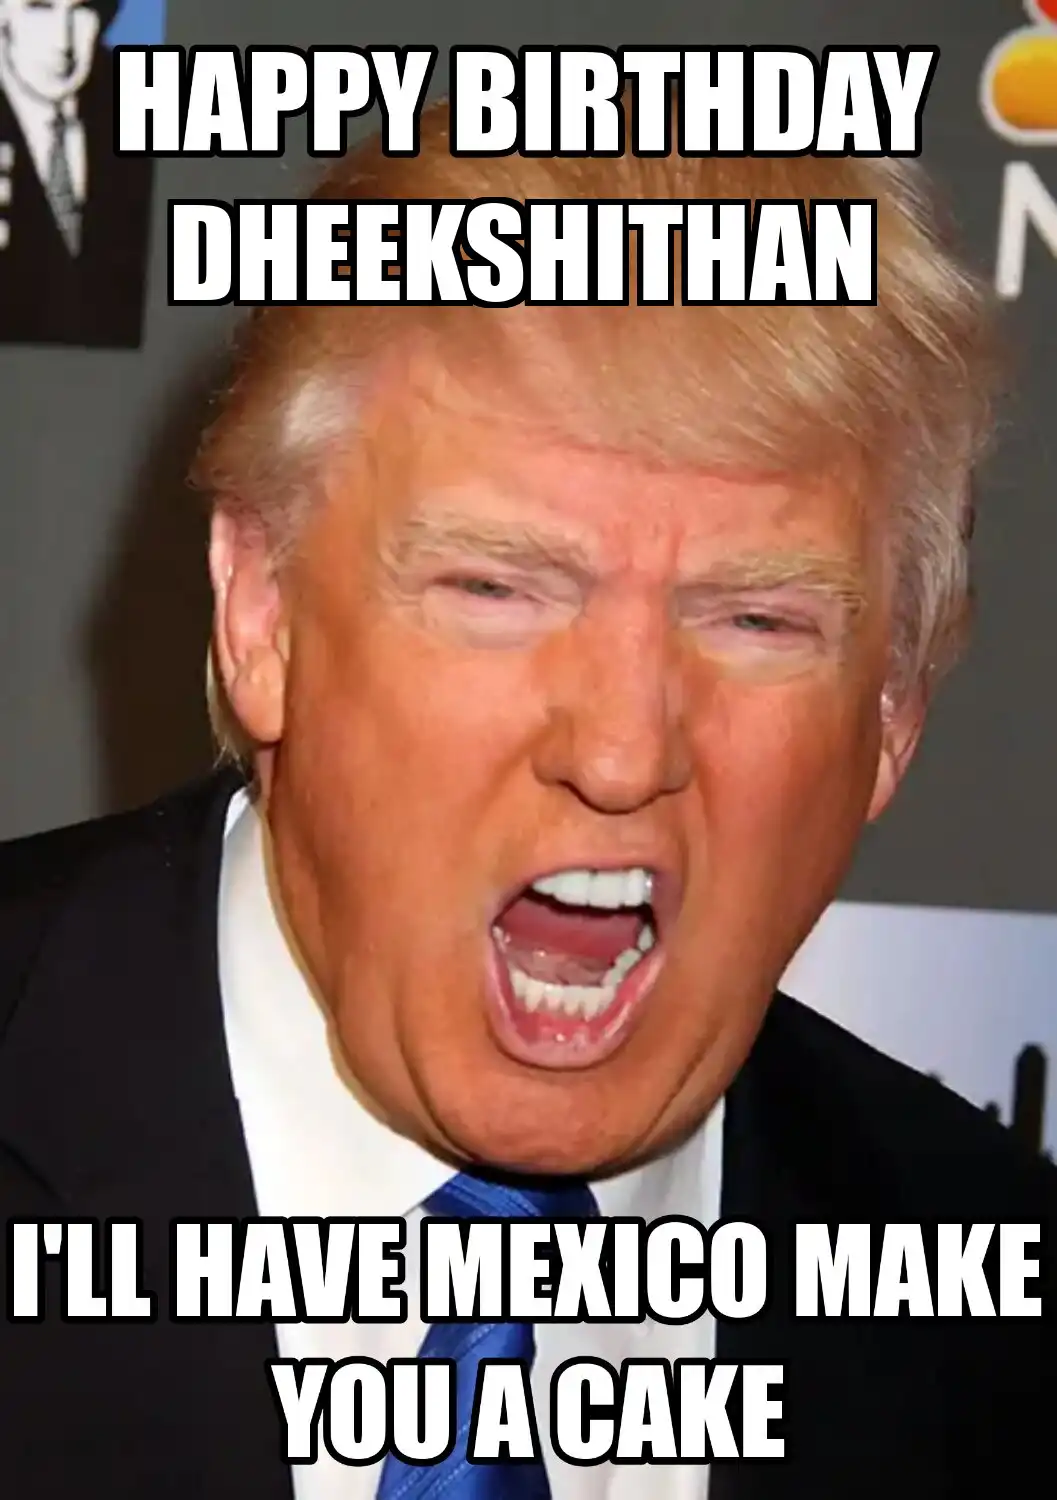 Happy Birthday Dheekshithan Mexico Make You A Cake Meme